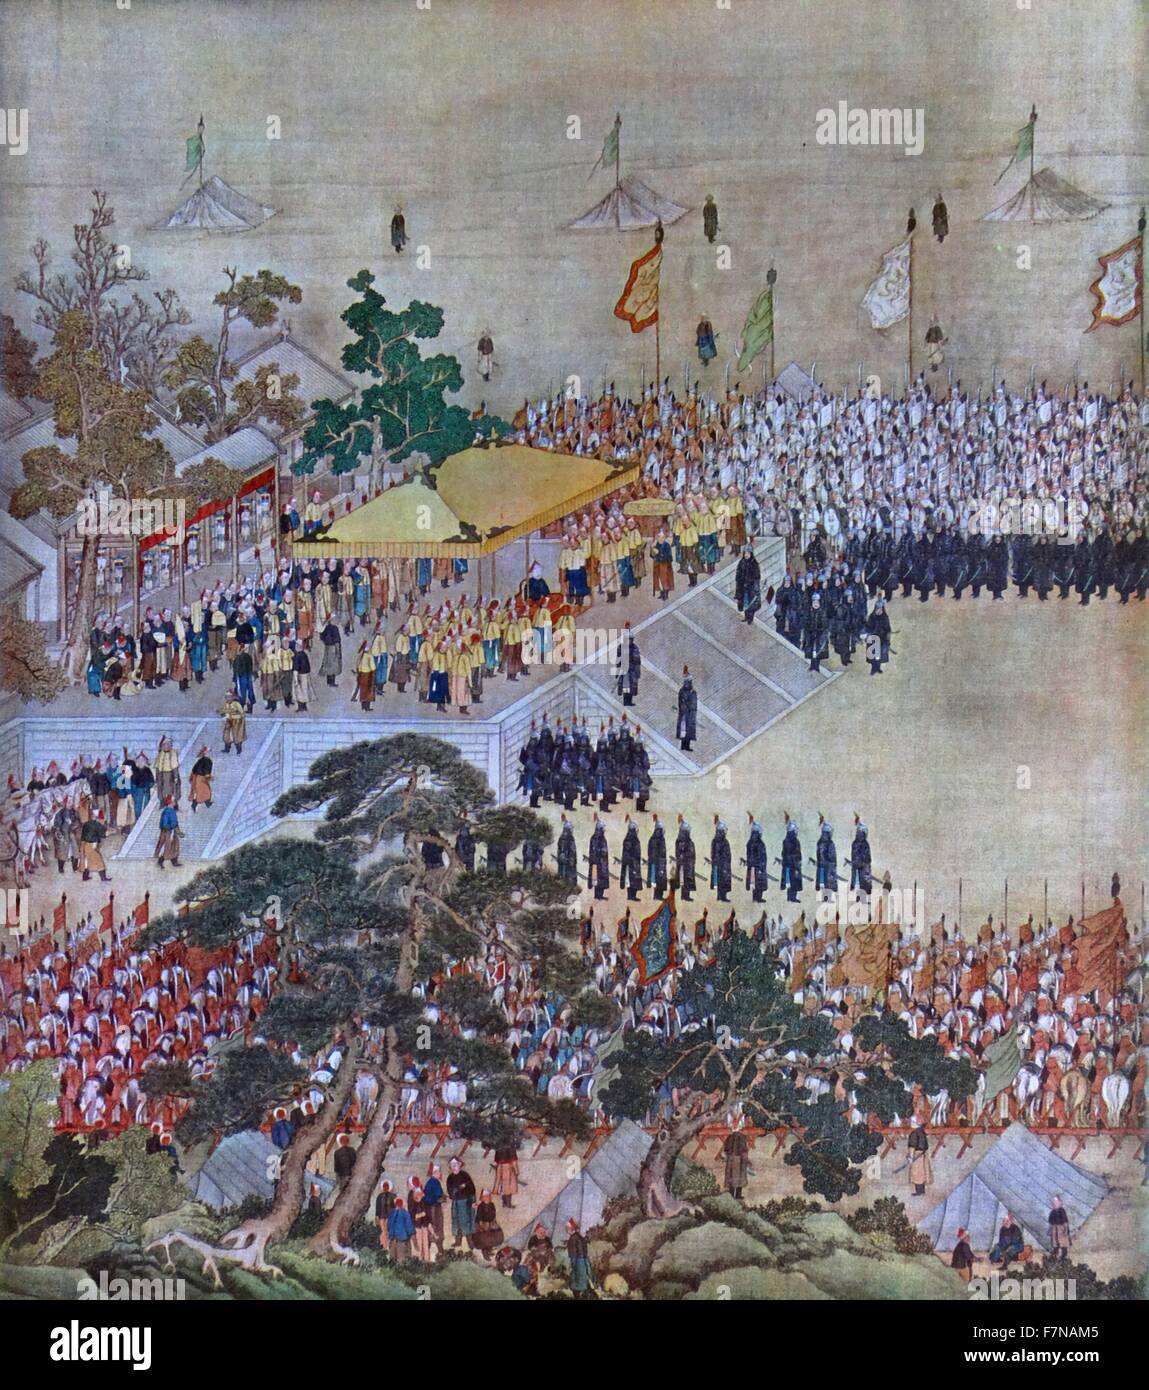 El tribunal itinerante de un emperador chino del siglo xviii. Posiblemente, el Emperador Qianlong (Chien-lung, 1711 - 1799). Sexto emperador de los Manchú-led de la dinastía Qing, y el cuarto emperador Qing para gobernar sobre China. reinó de 1735 a 1796 Foto de stock